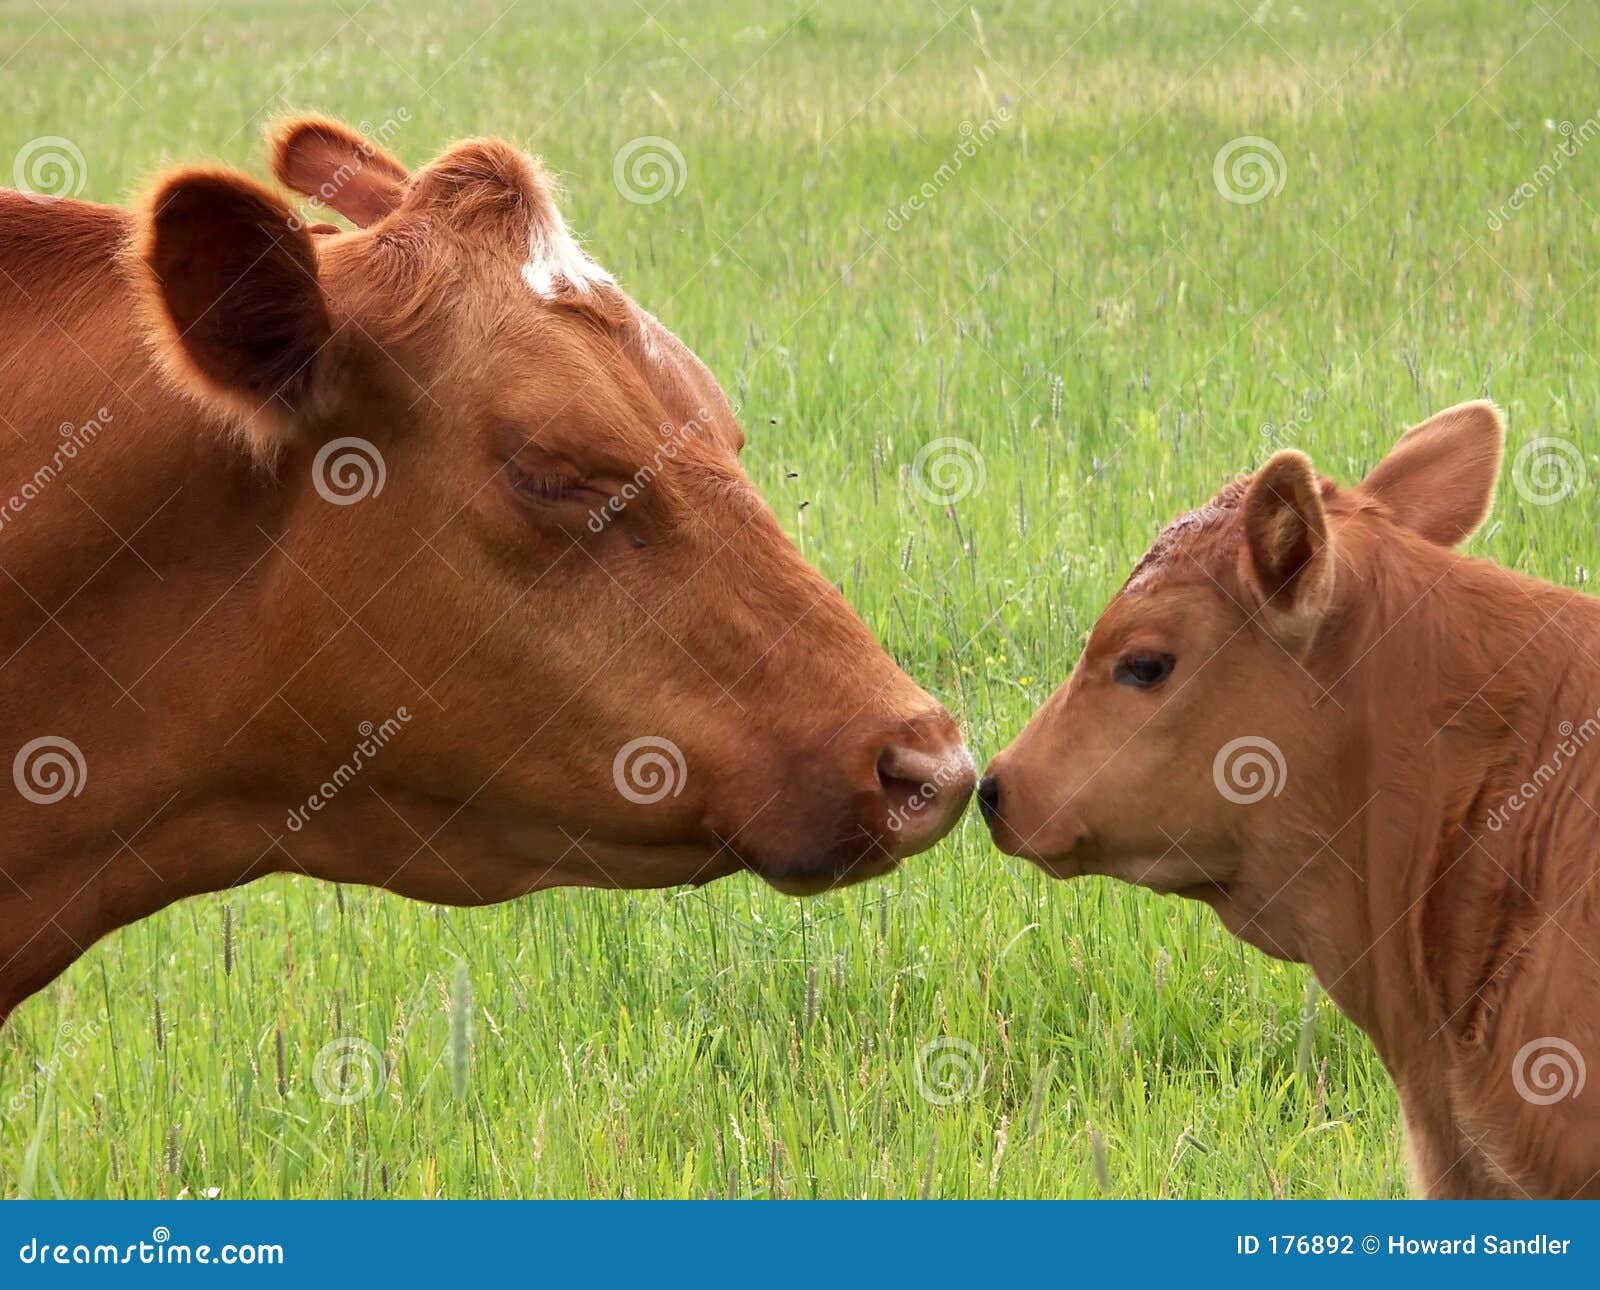 cow kisses clipart - photo #39